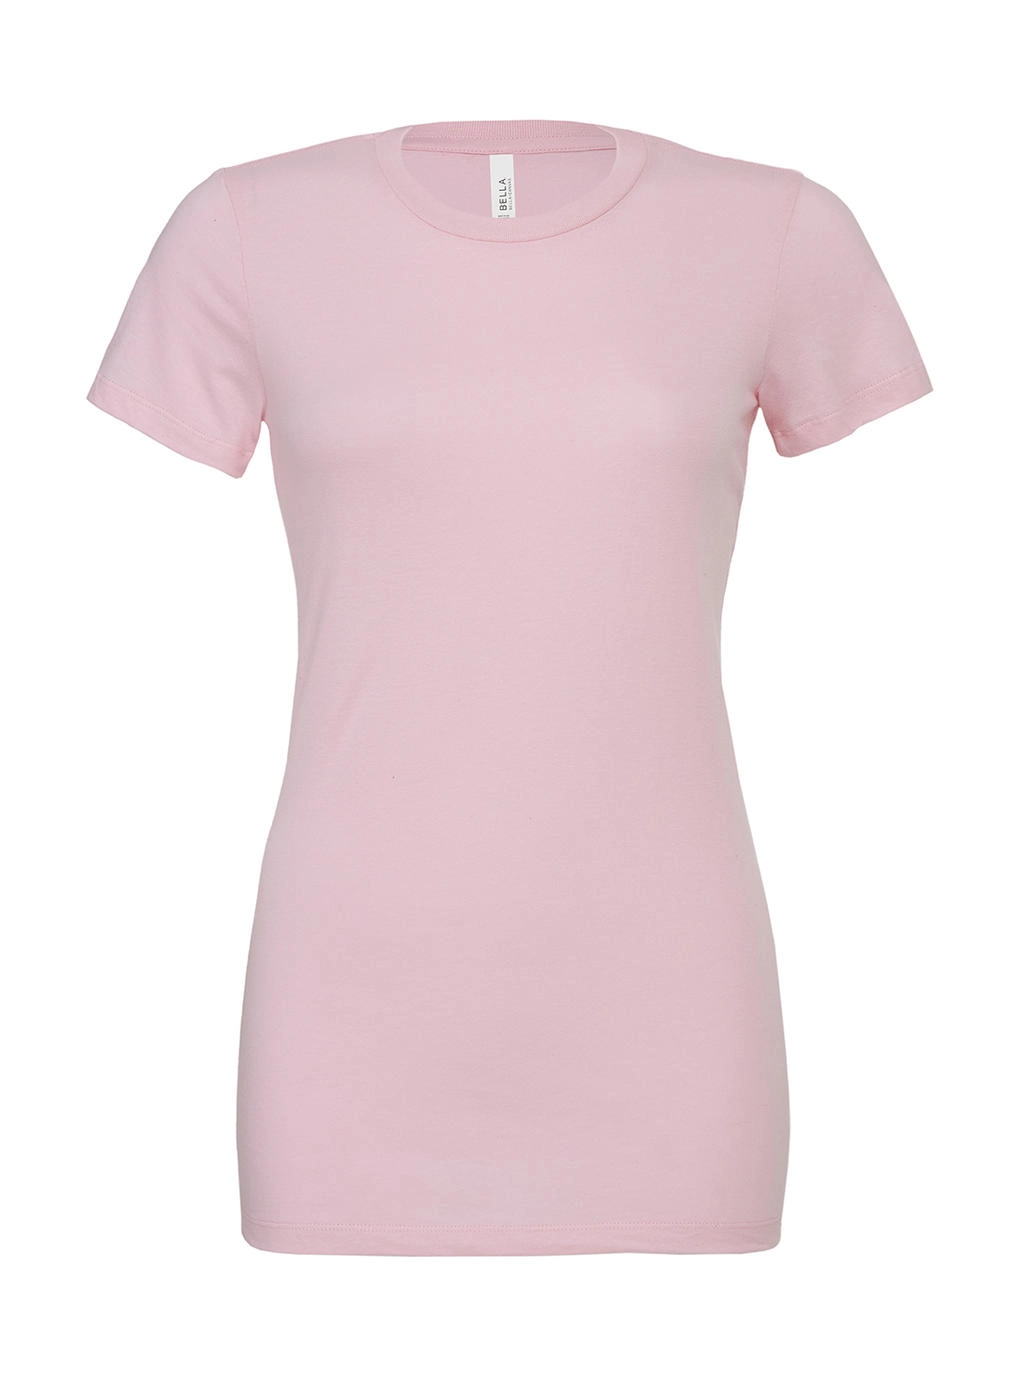 Women`s Relaxed Jersey Short Sleeve Tee zum Besticken und Bedrucken in der Farbe Pink mit Ihren Logo, Schriftzug oder Motiv.